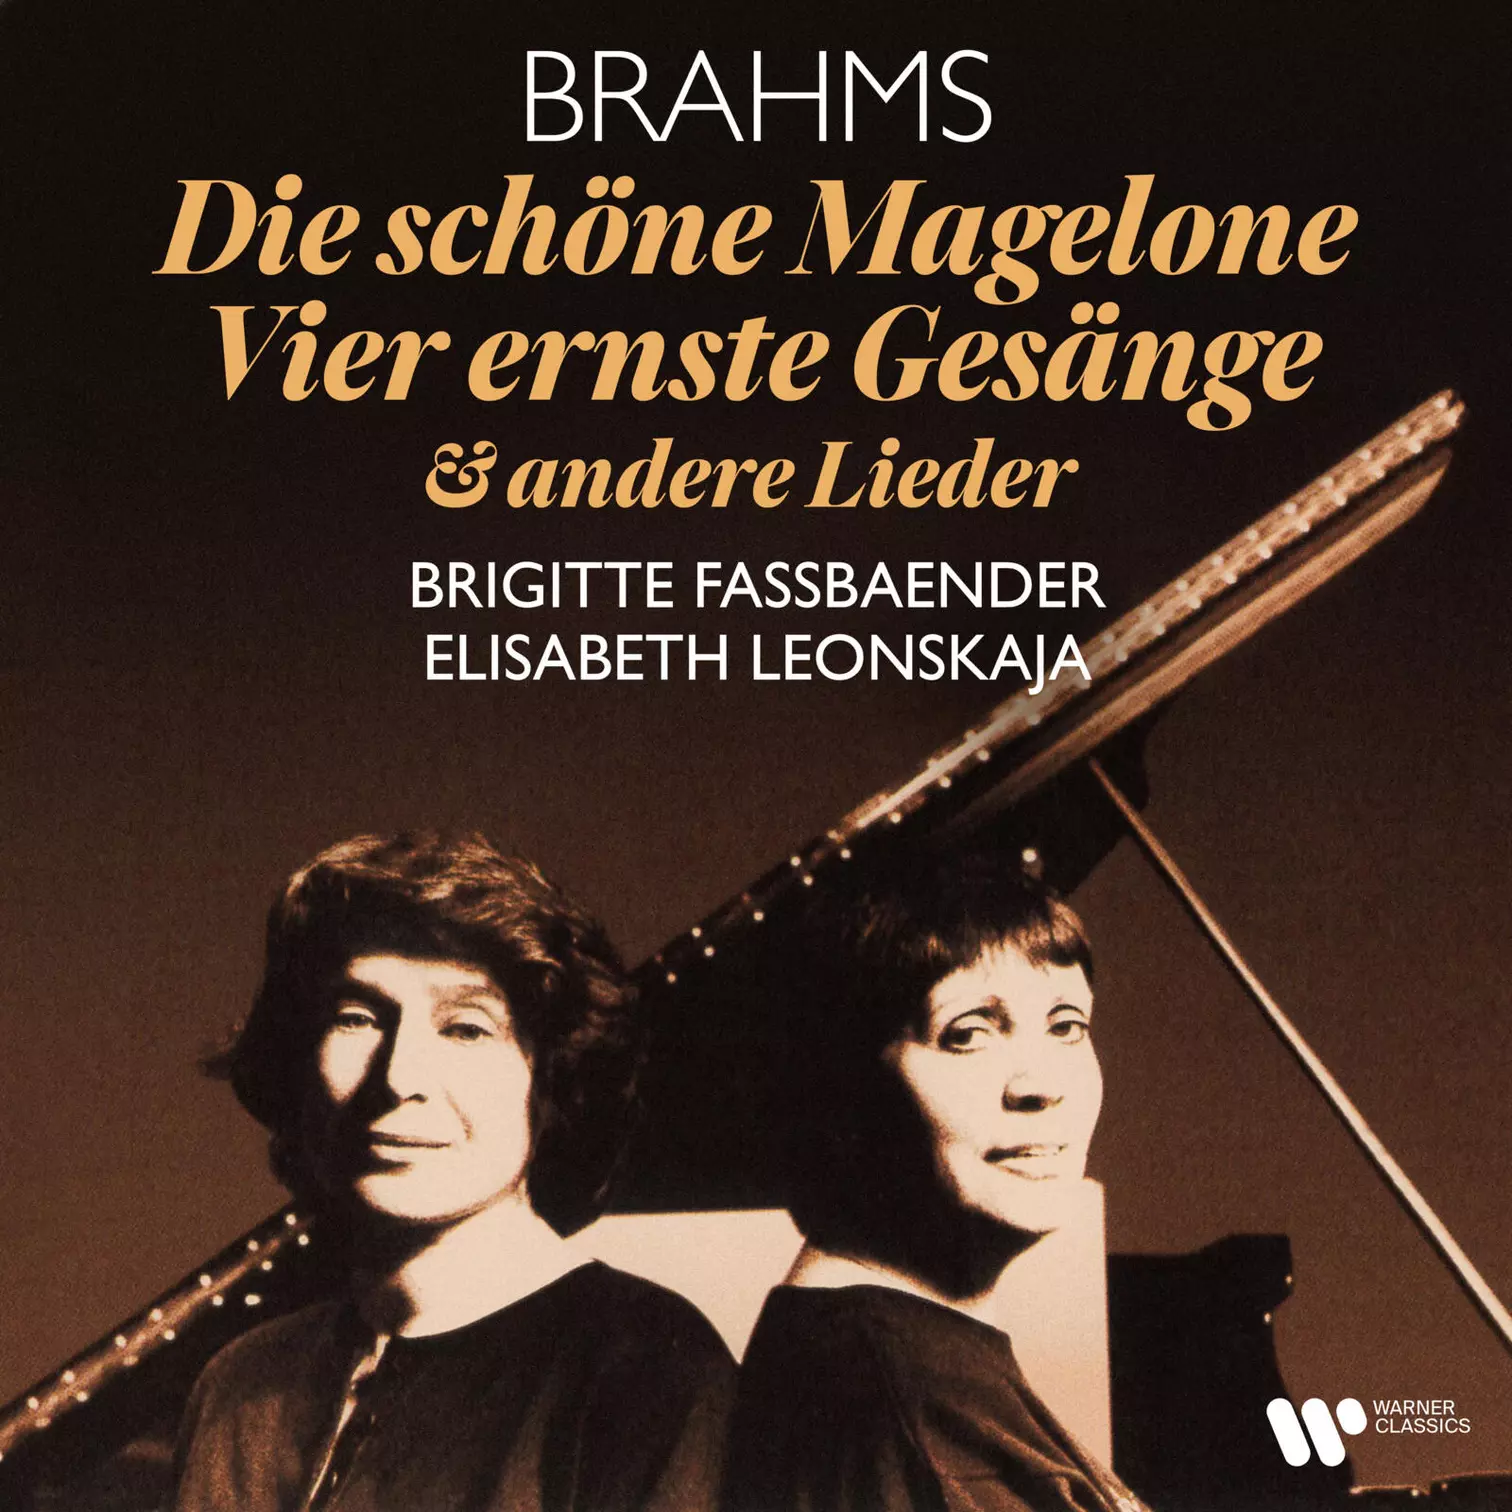 Brahms: Die schöne Magelone, Op. 33, Vier ernste Gesänge, Op. 121 & andere Lieder